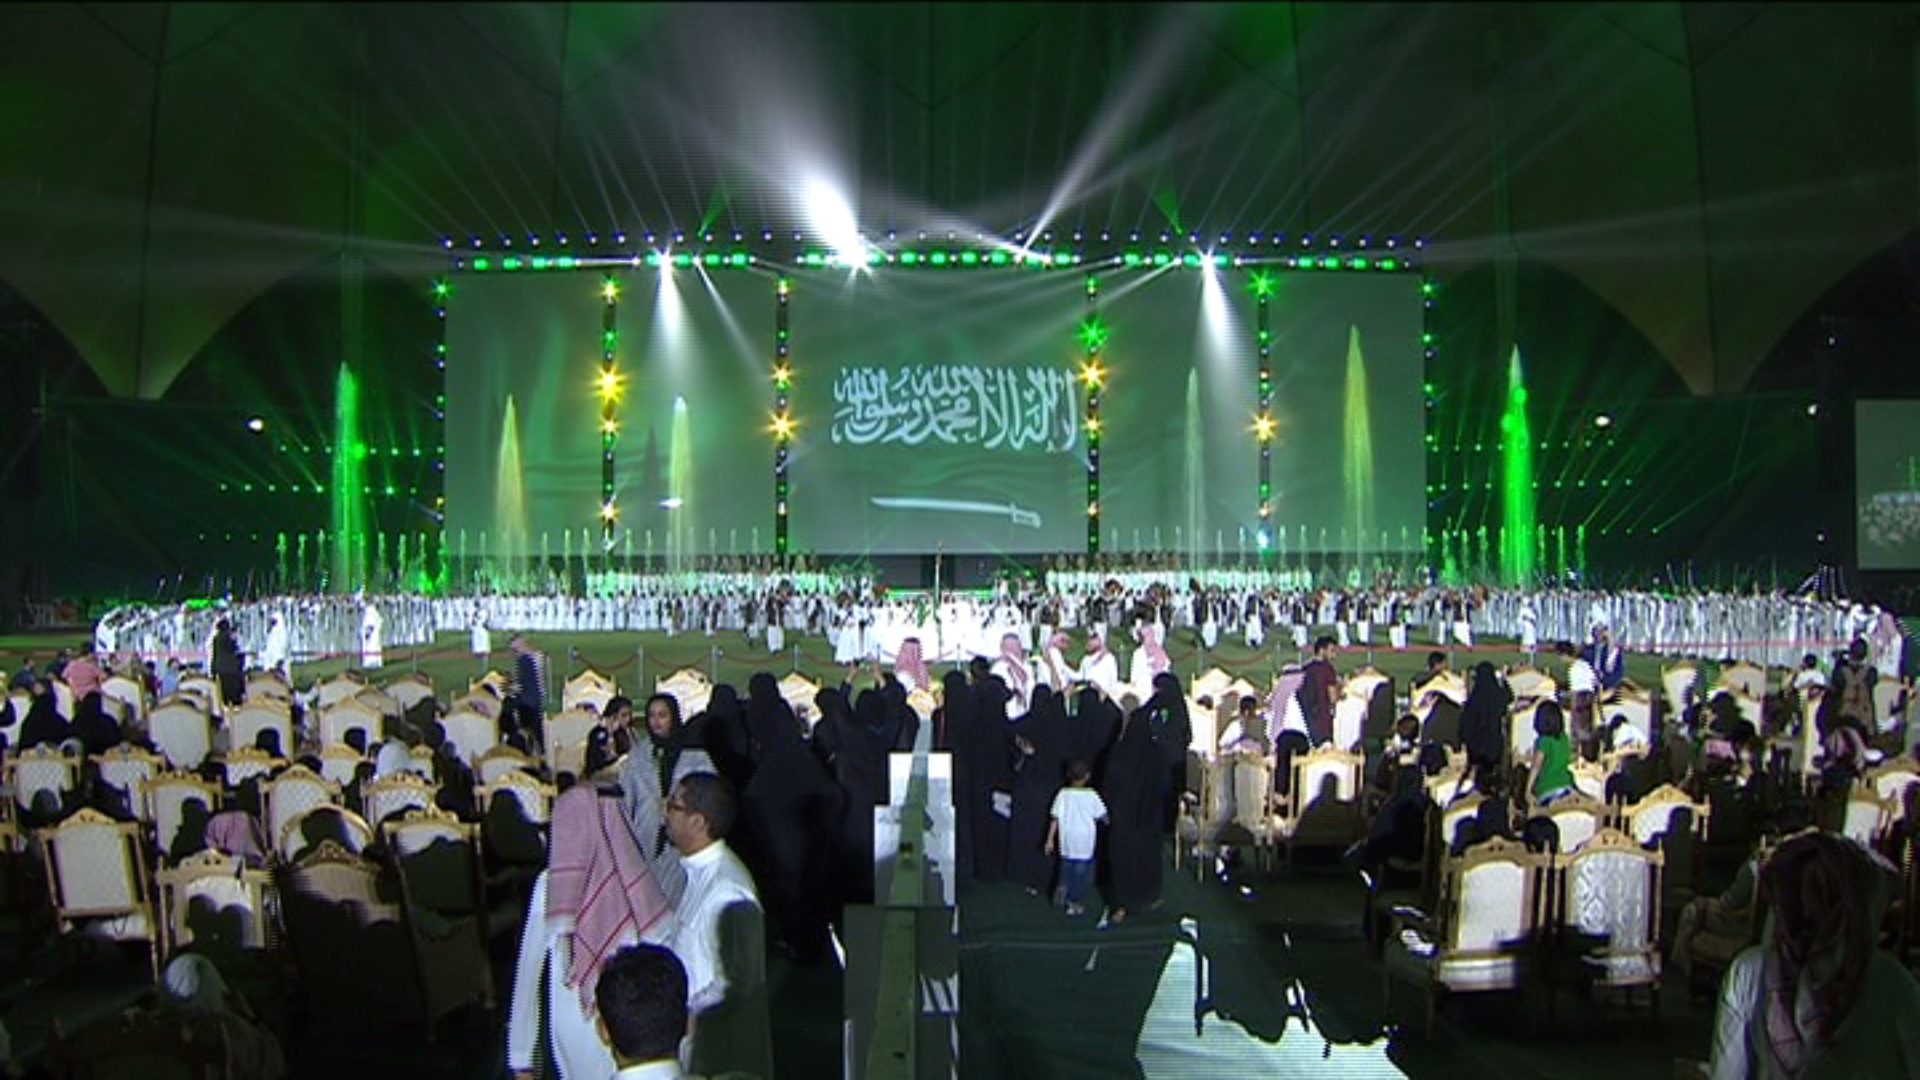 أسوشيتد برس الأميركية: العائلة السعودية صنعت الاحتفال باليوم الوطني 87